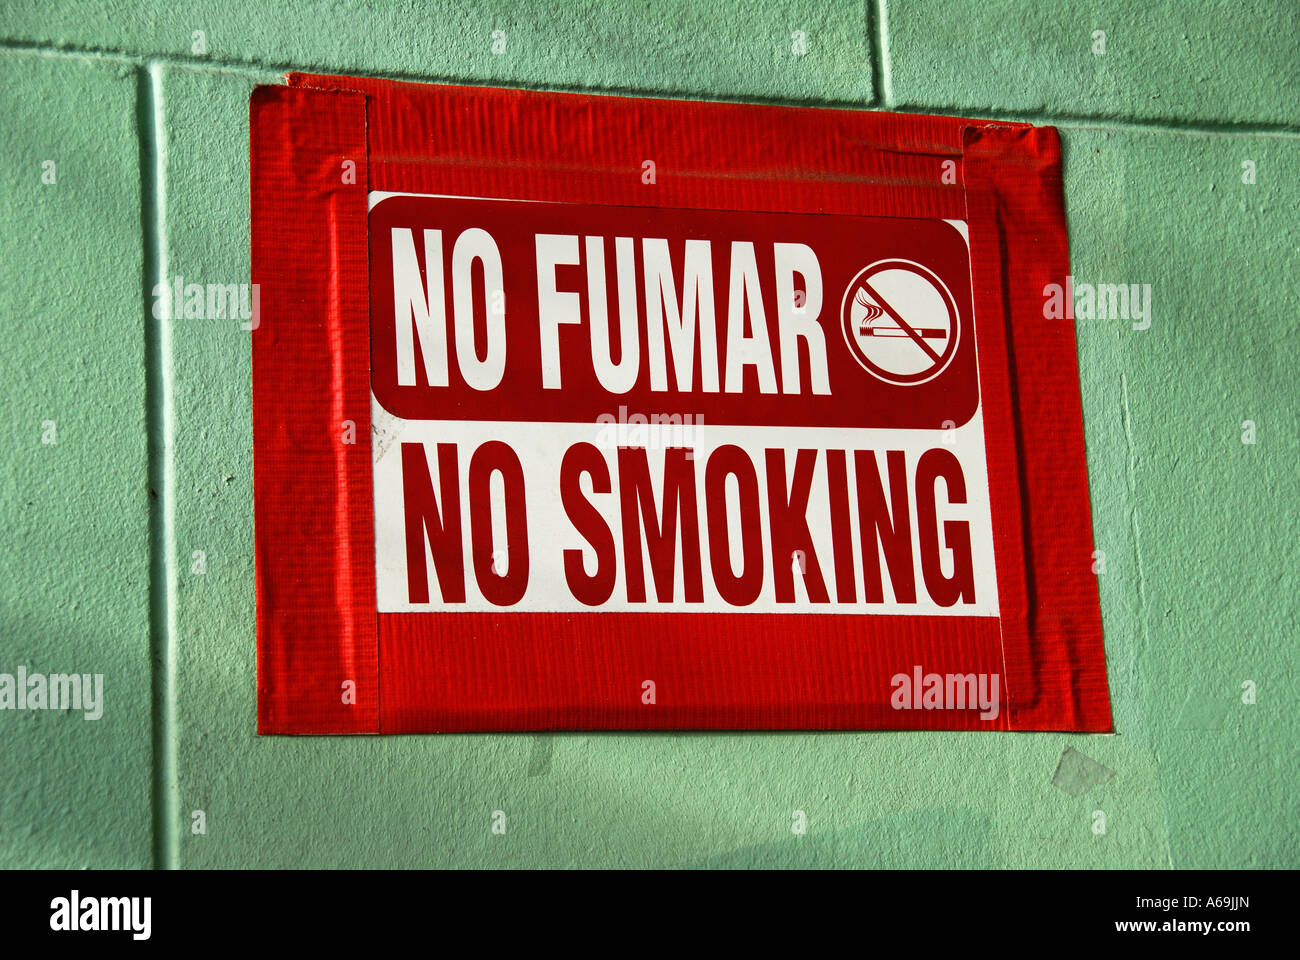 'A 'No Fumar' 'No Smoking' sign, California' Stock Photo